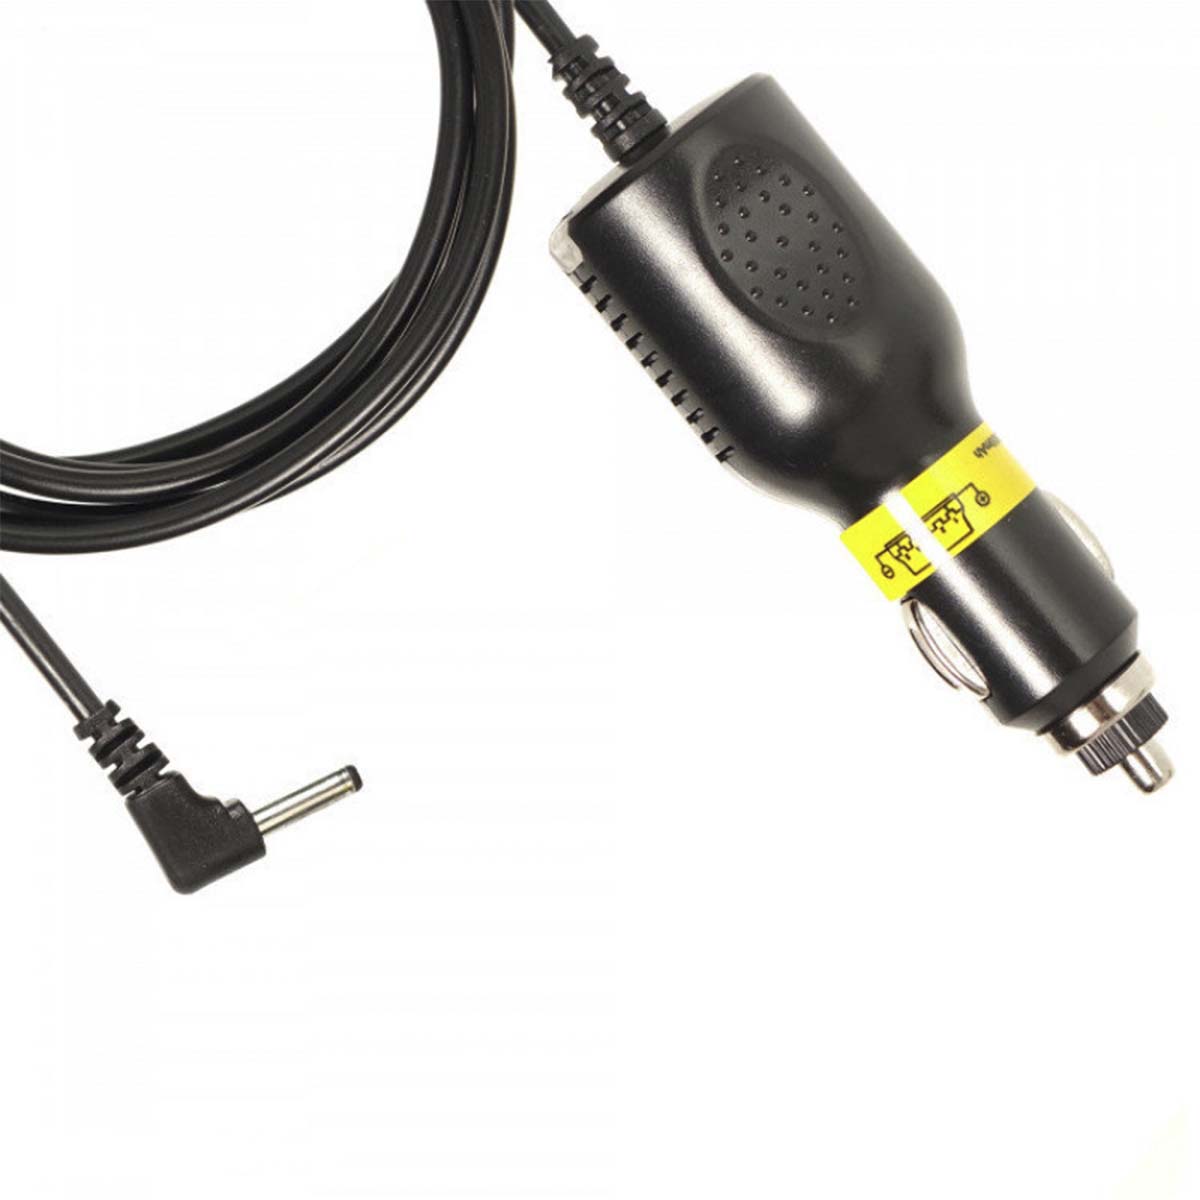 АЗУ (Автомобильное зарядное устройство) LP4 25, с кабелем питания прямой 2.5*0.7, 5V-2A, длина 3.5 метра, цвет черный